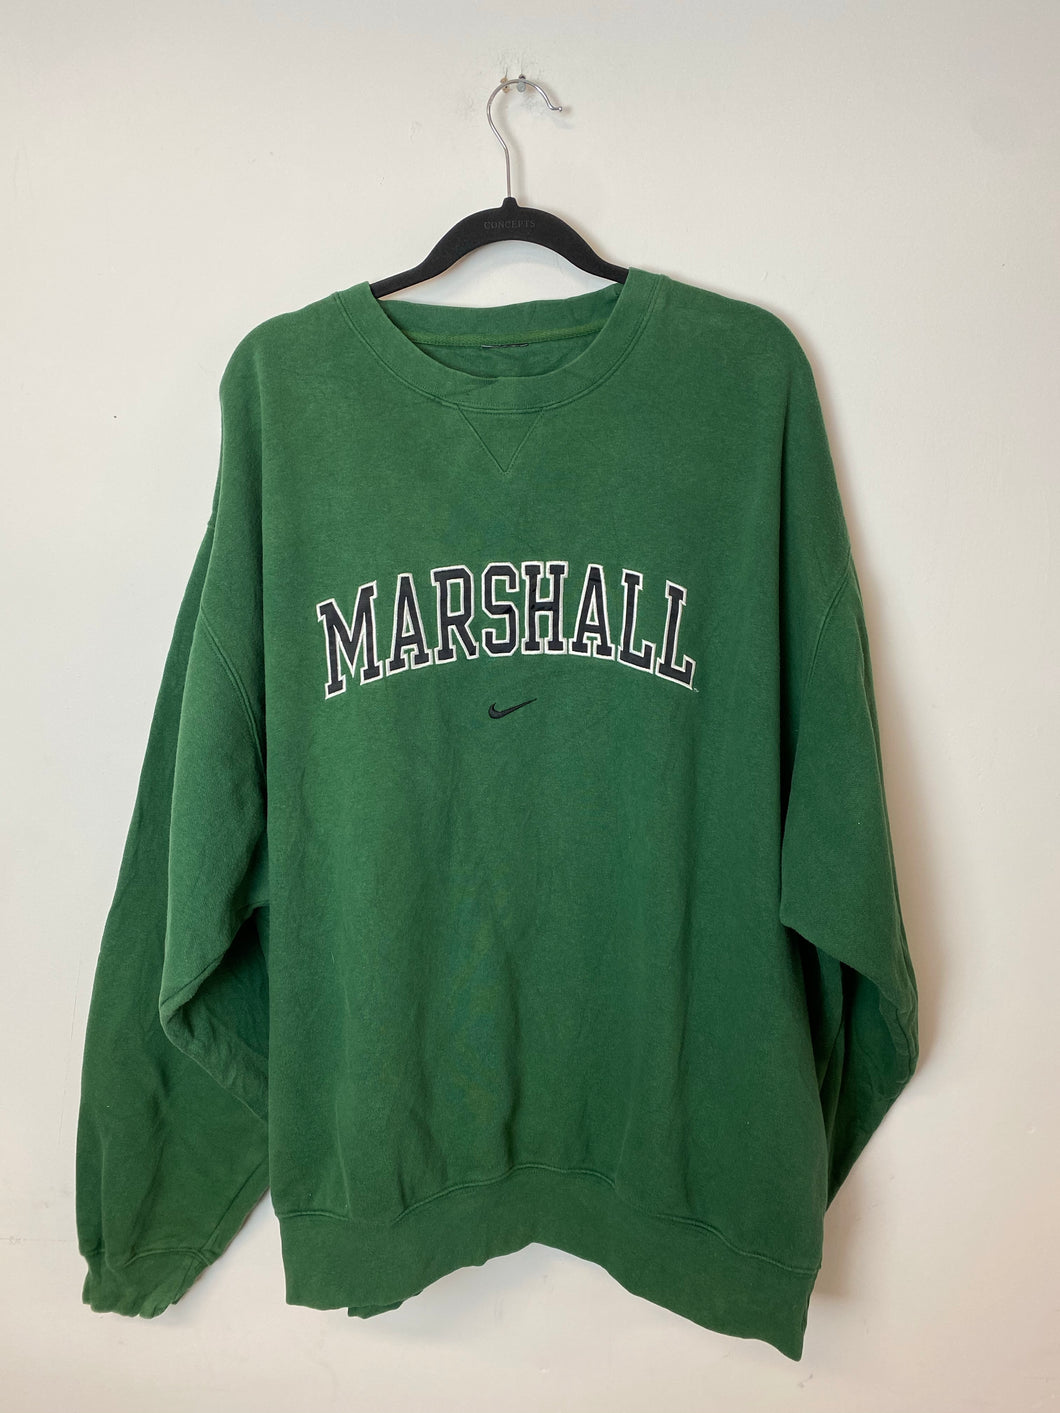 Vintage Embroidered Marshall University Nike Crewneck - L/XL